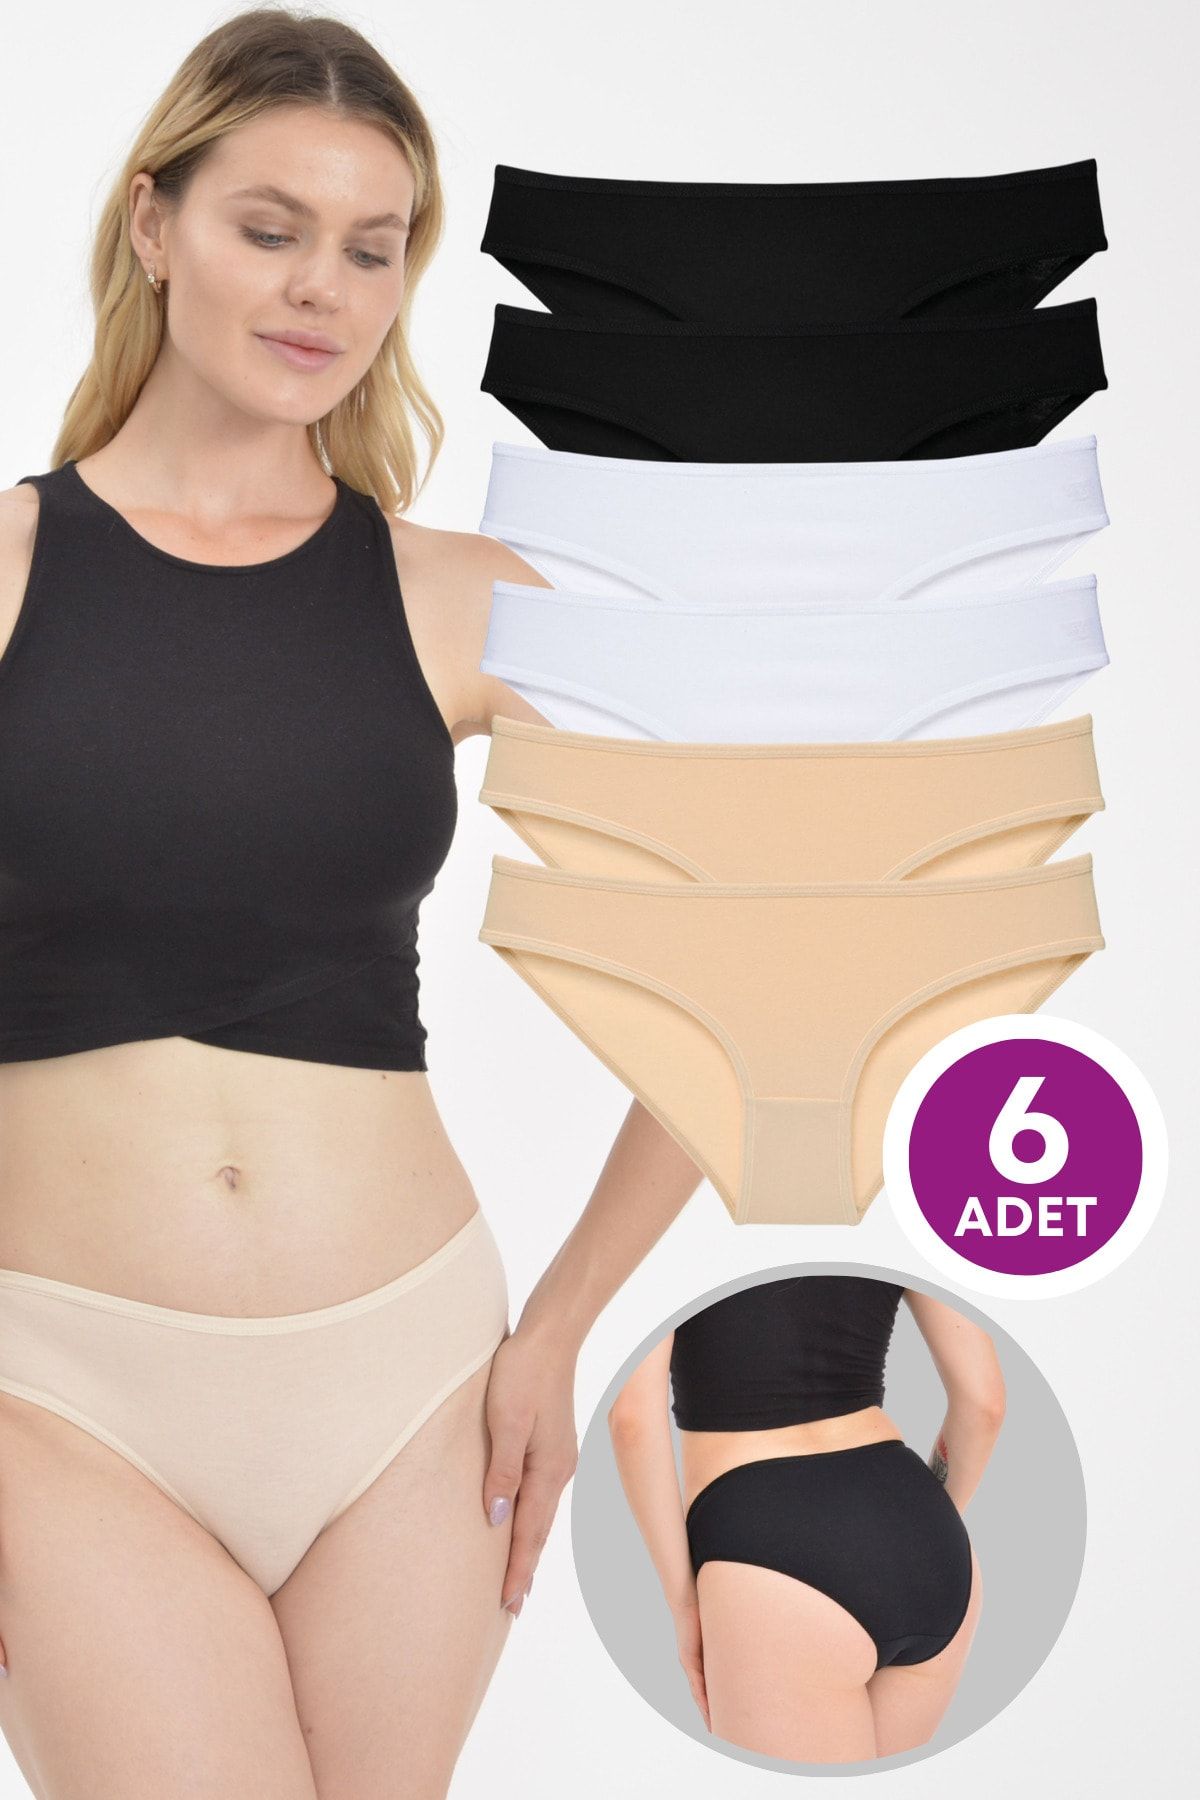 LadyMelex Kadın Bikini Külot Esnek Pamuklu Kumaş Siyah Beyaz Ten 6'lı Paket